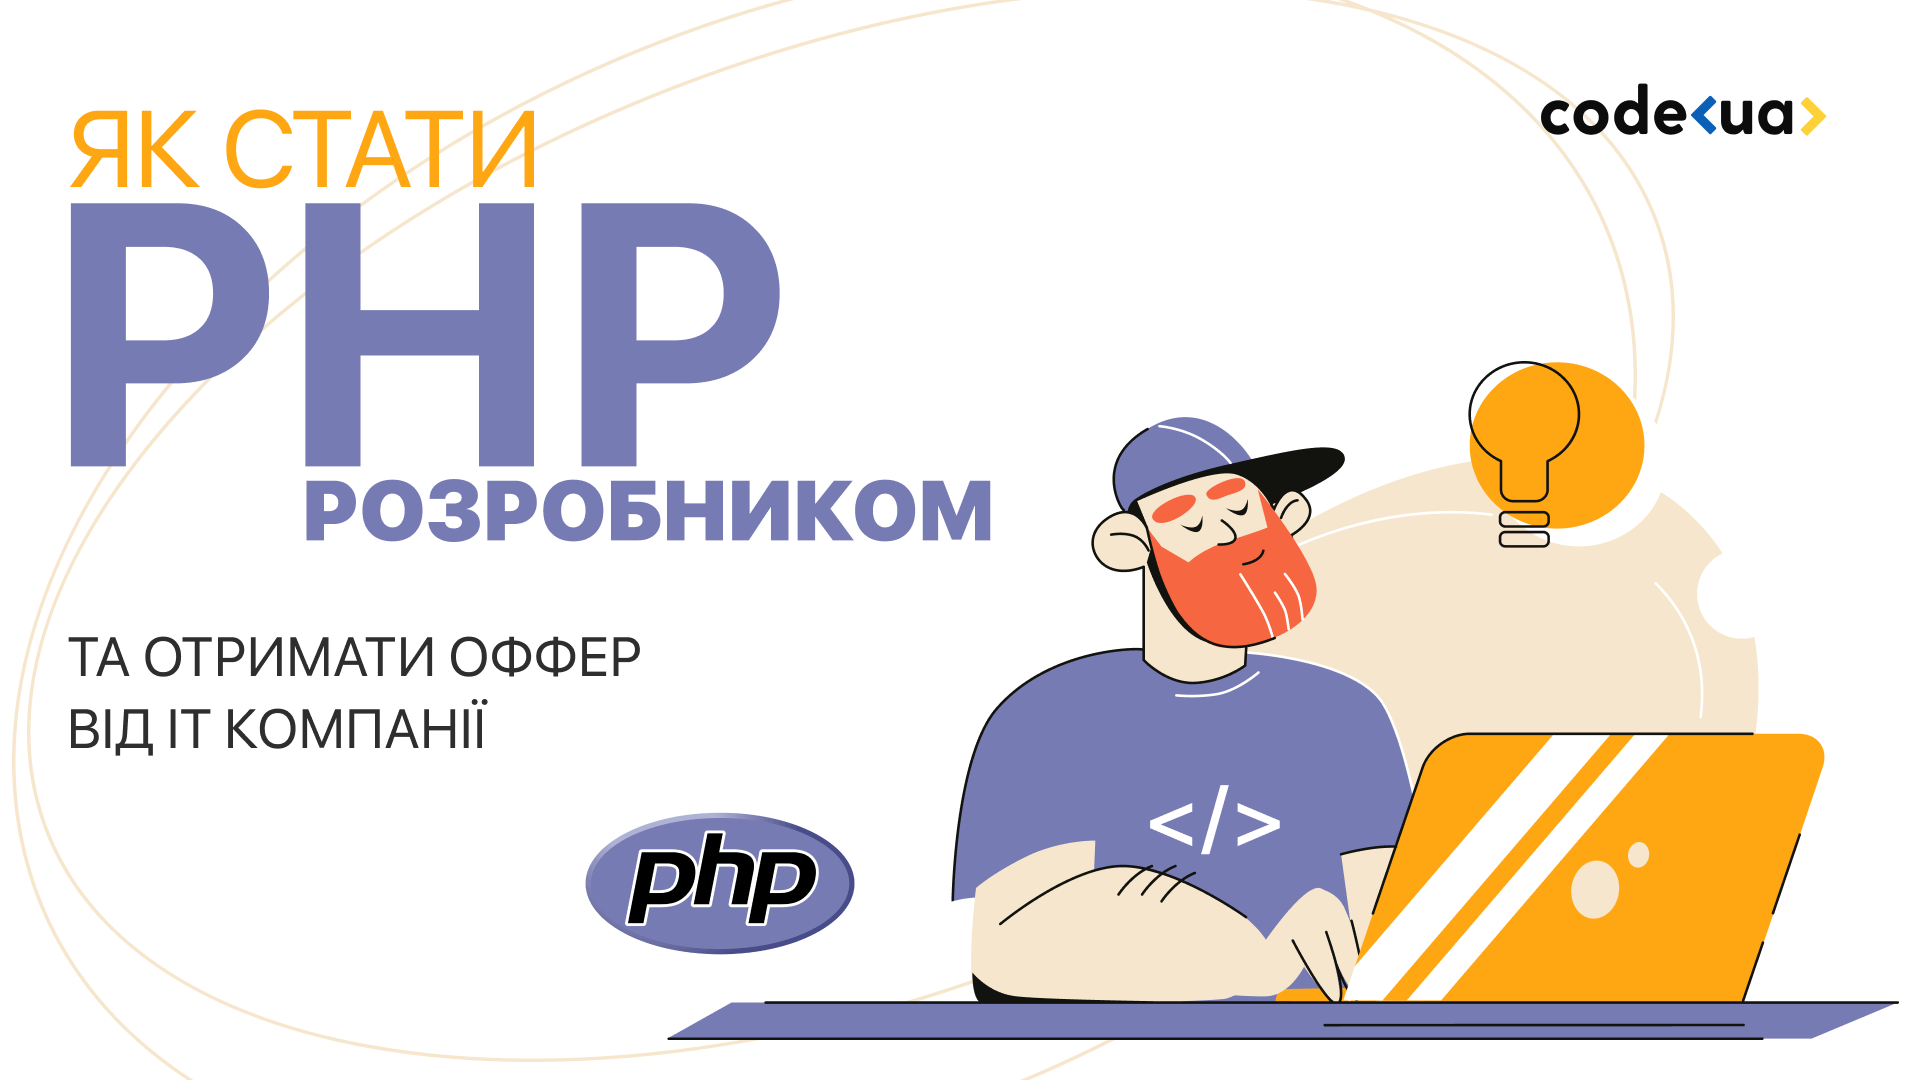 Як стати PHP розробником і отримати оффер від IT компанії